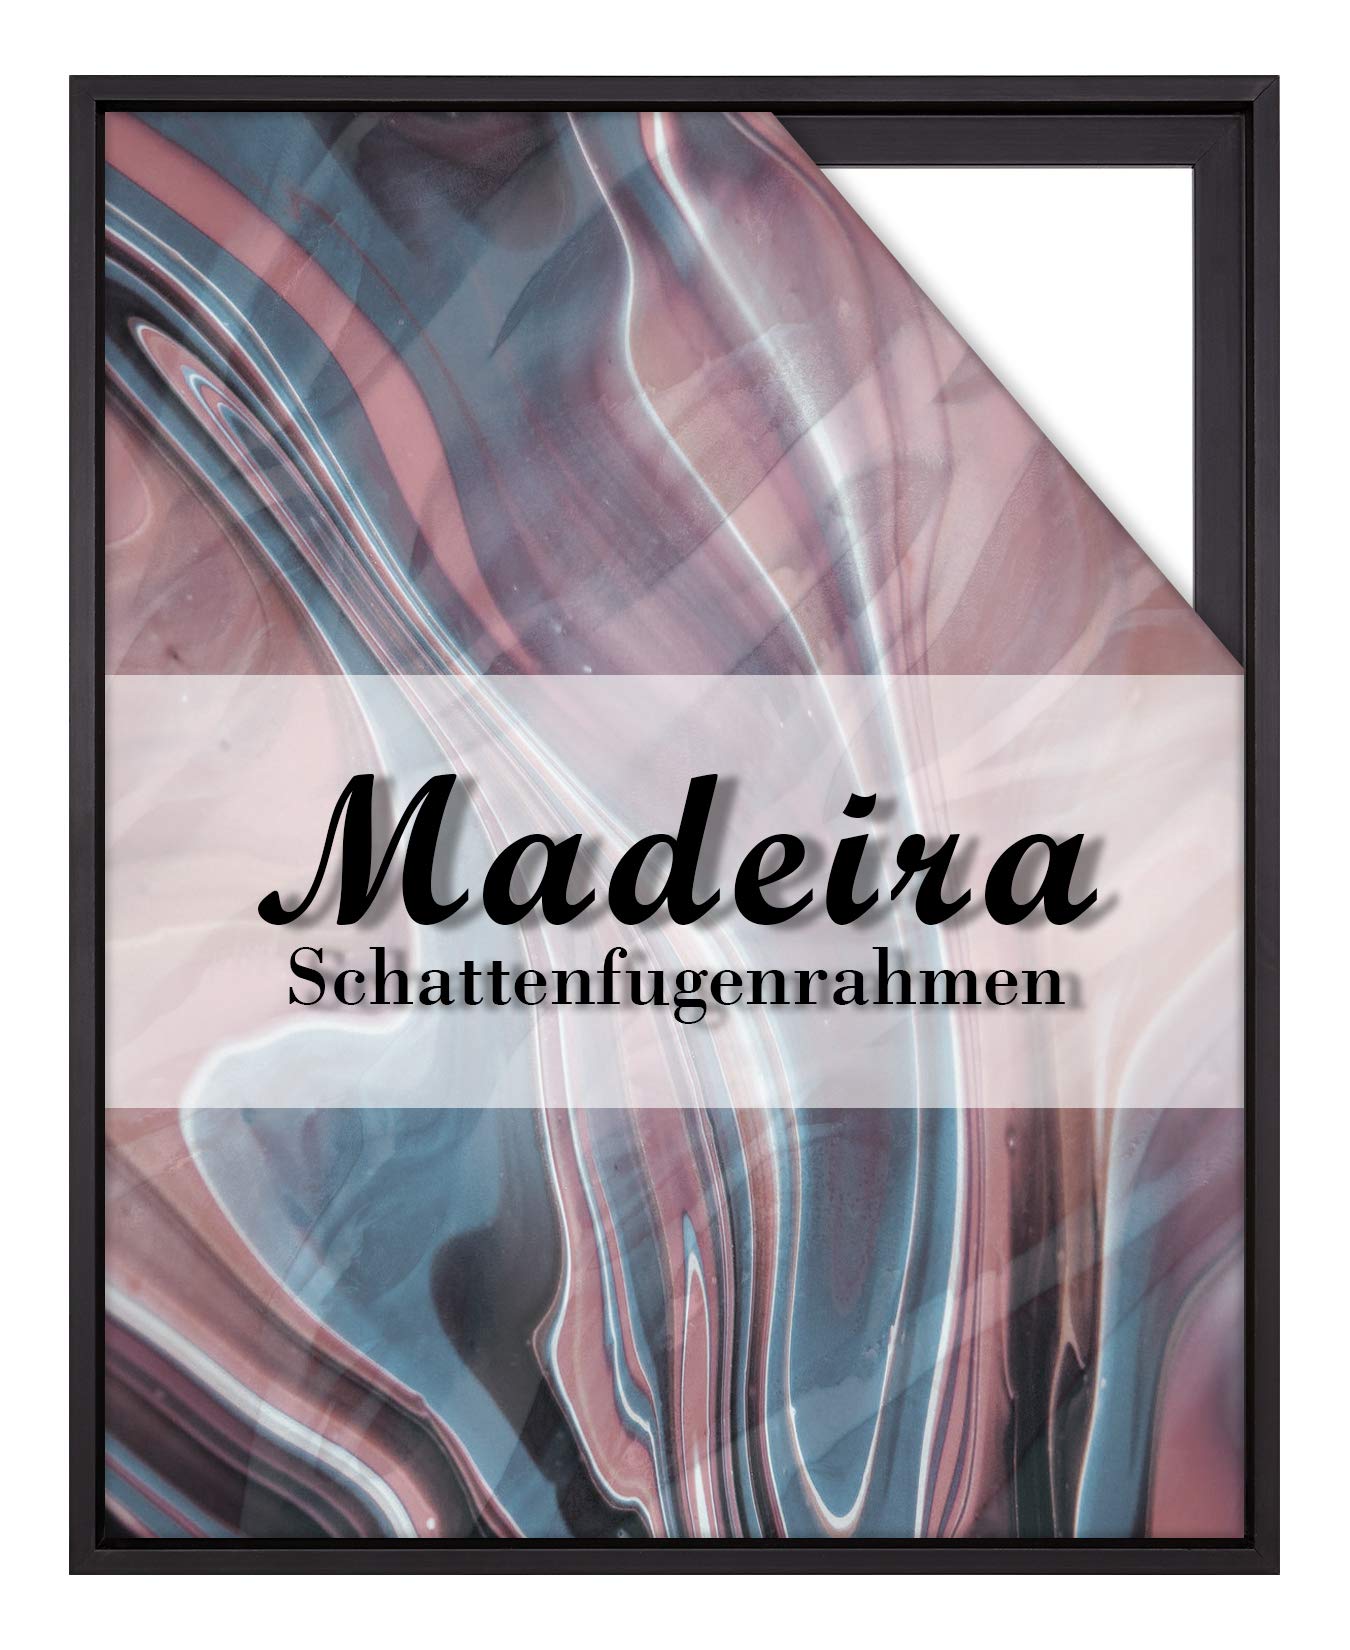 BIRAPA Madeira Schattenfugenrahmen für Leinwand 50x150 cm in Schwarz, Holzrahmen, Rahmen für Leinwände, Leerrahmen für Leinwand, Schattenfugenrahmen für Keilrahmen